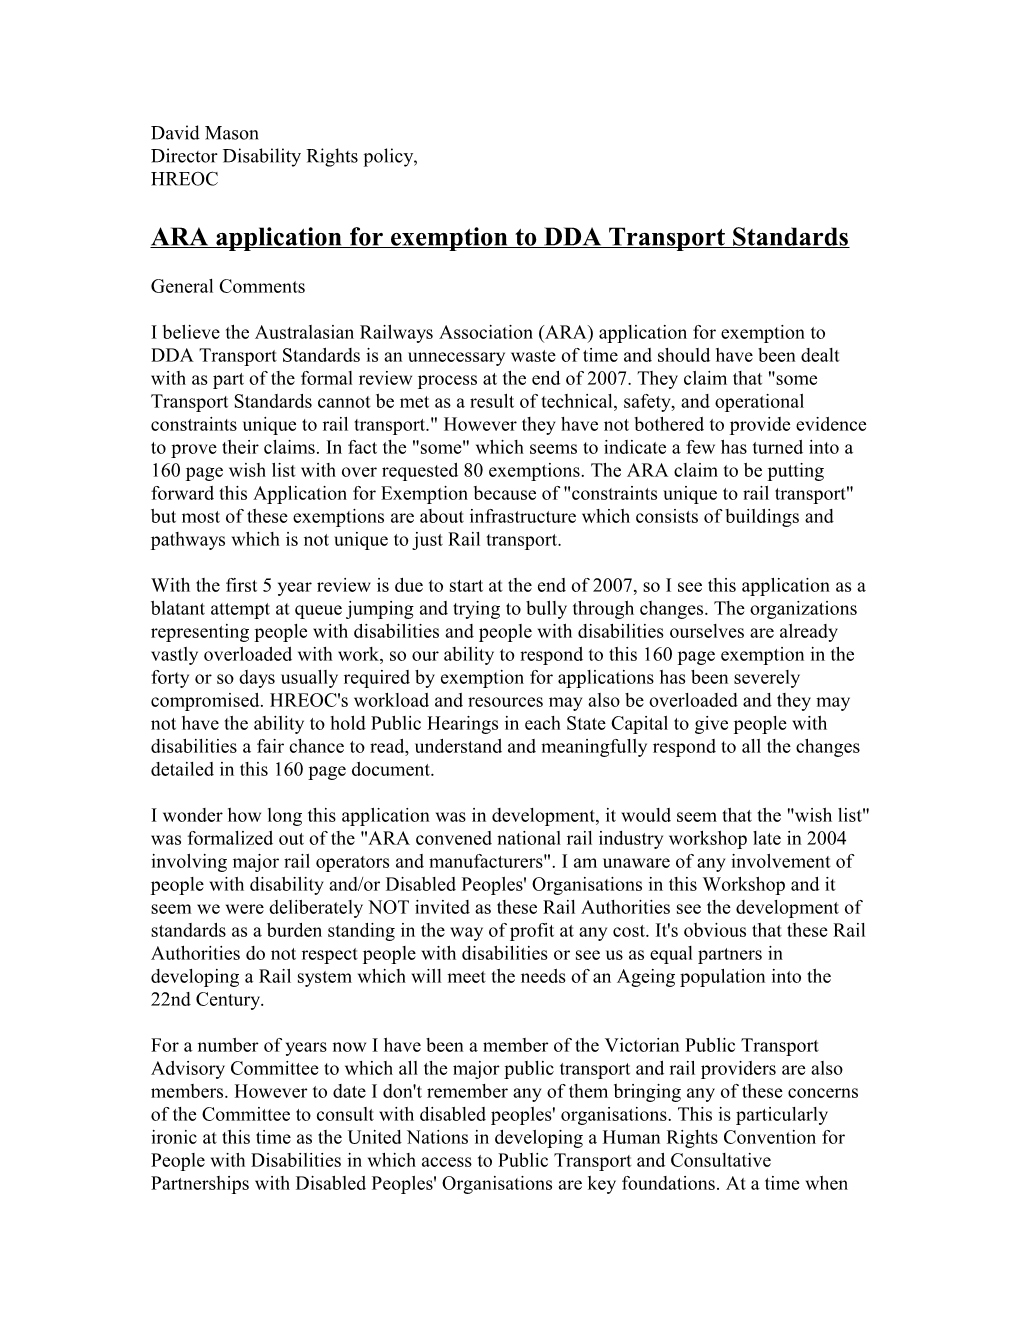 ARA Application for Exemption to DDA Transport Standards